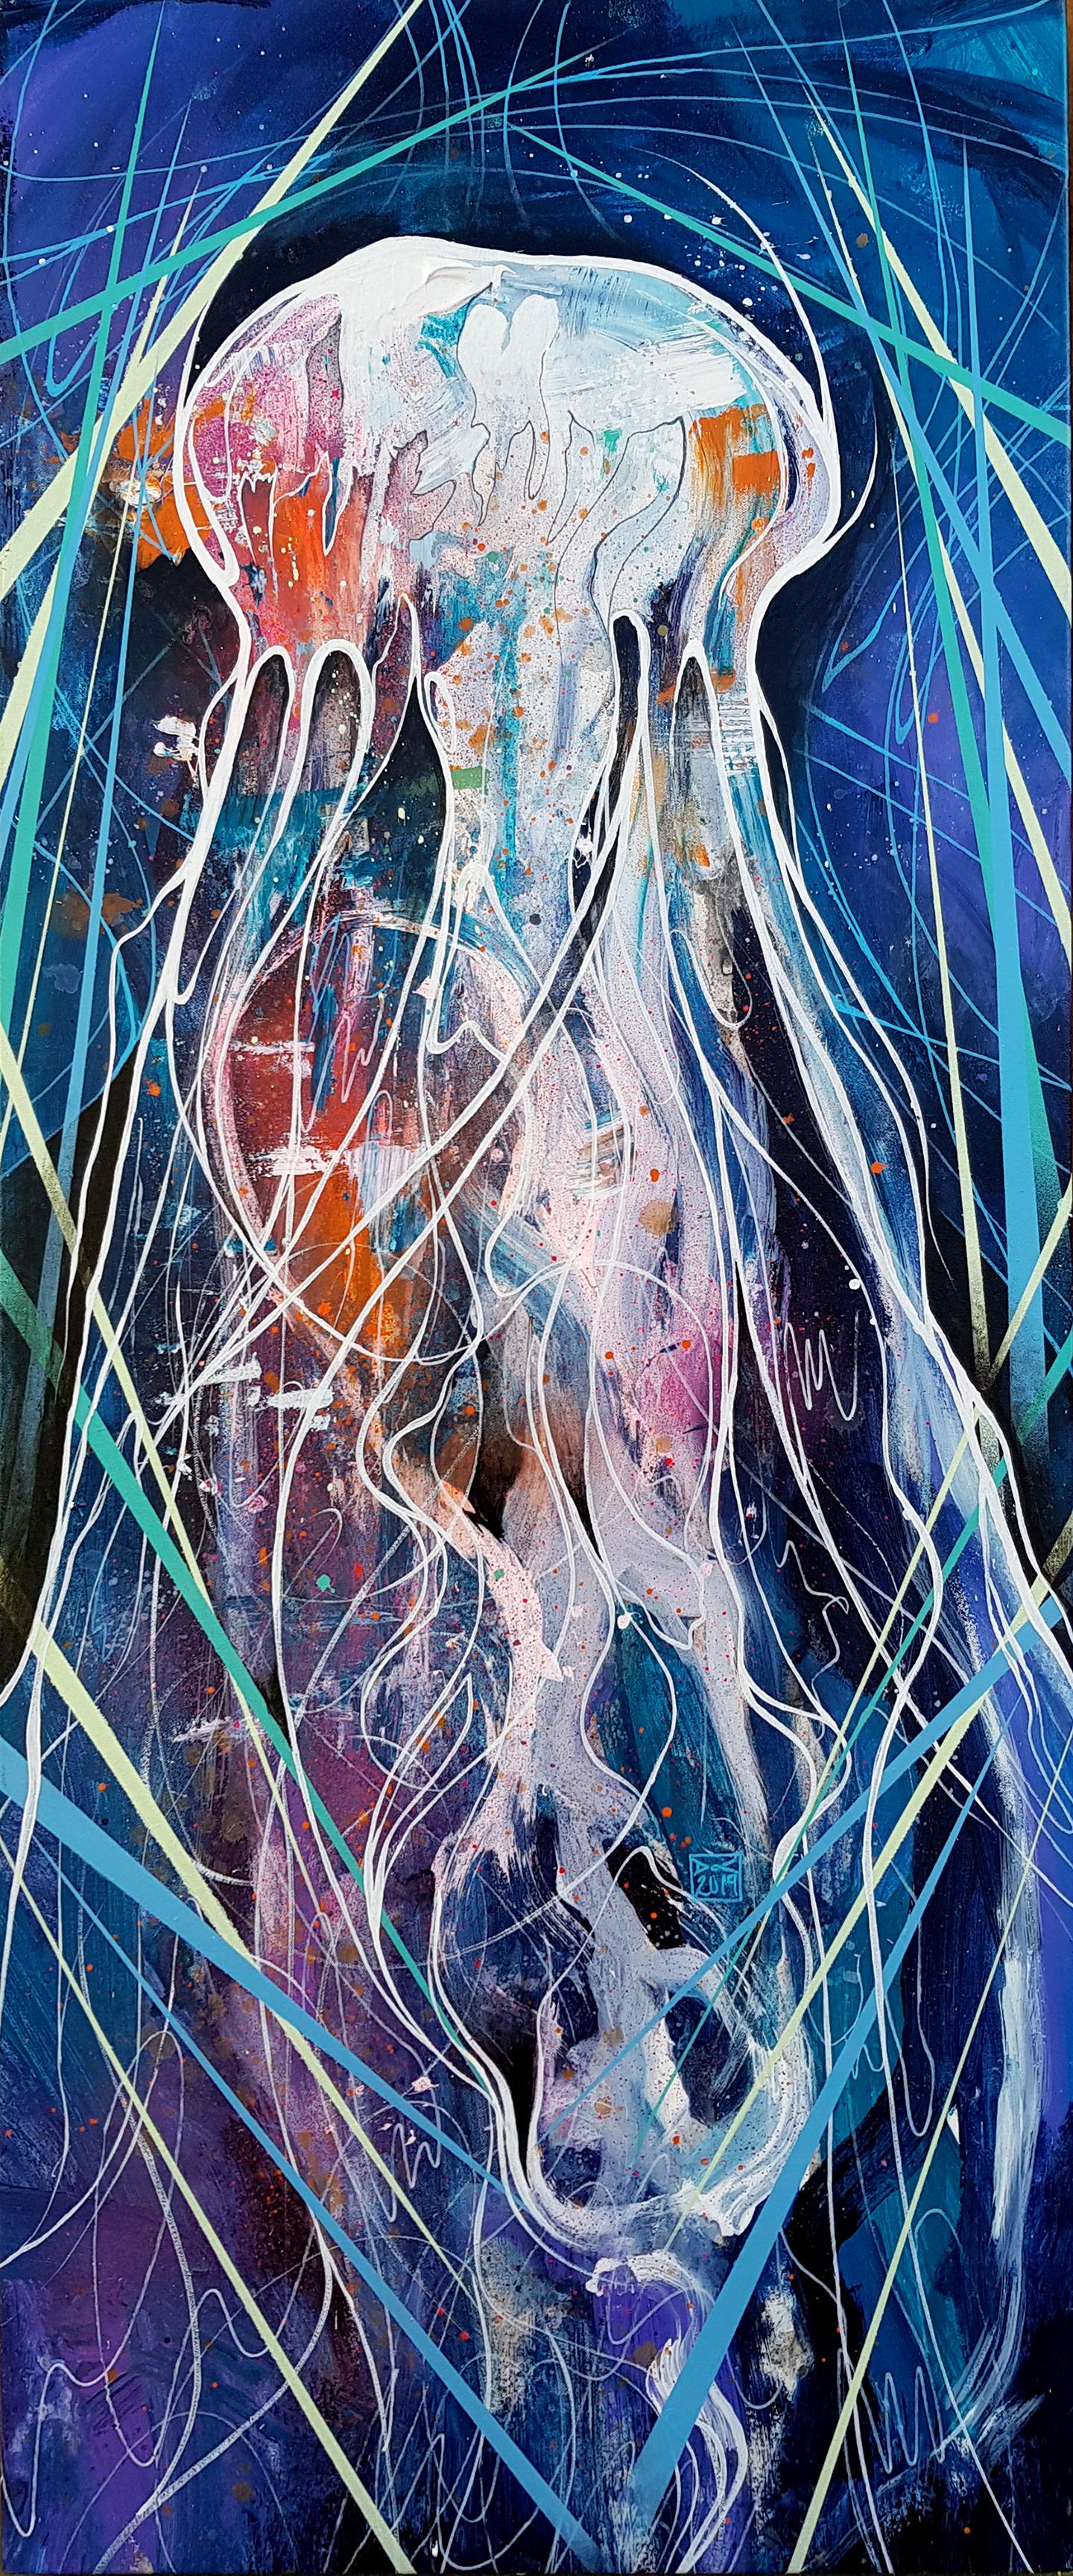 Danny O'Connor Figurative Painting – Jellyfish - 21. Jahrhundert, Zeitgenössisches Gemälde, Meerestier, Graffiti